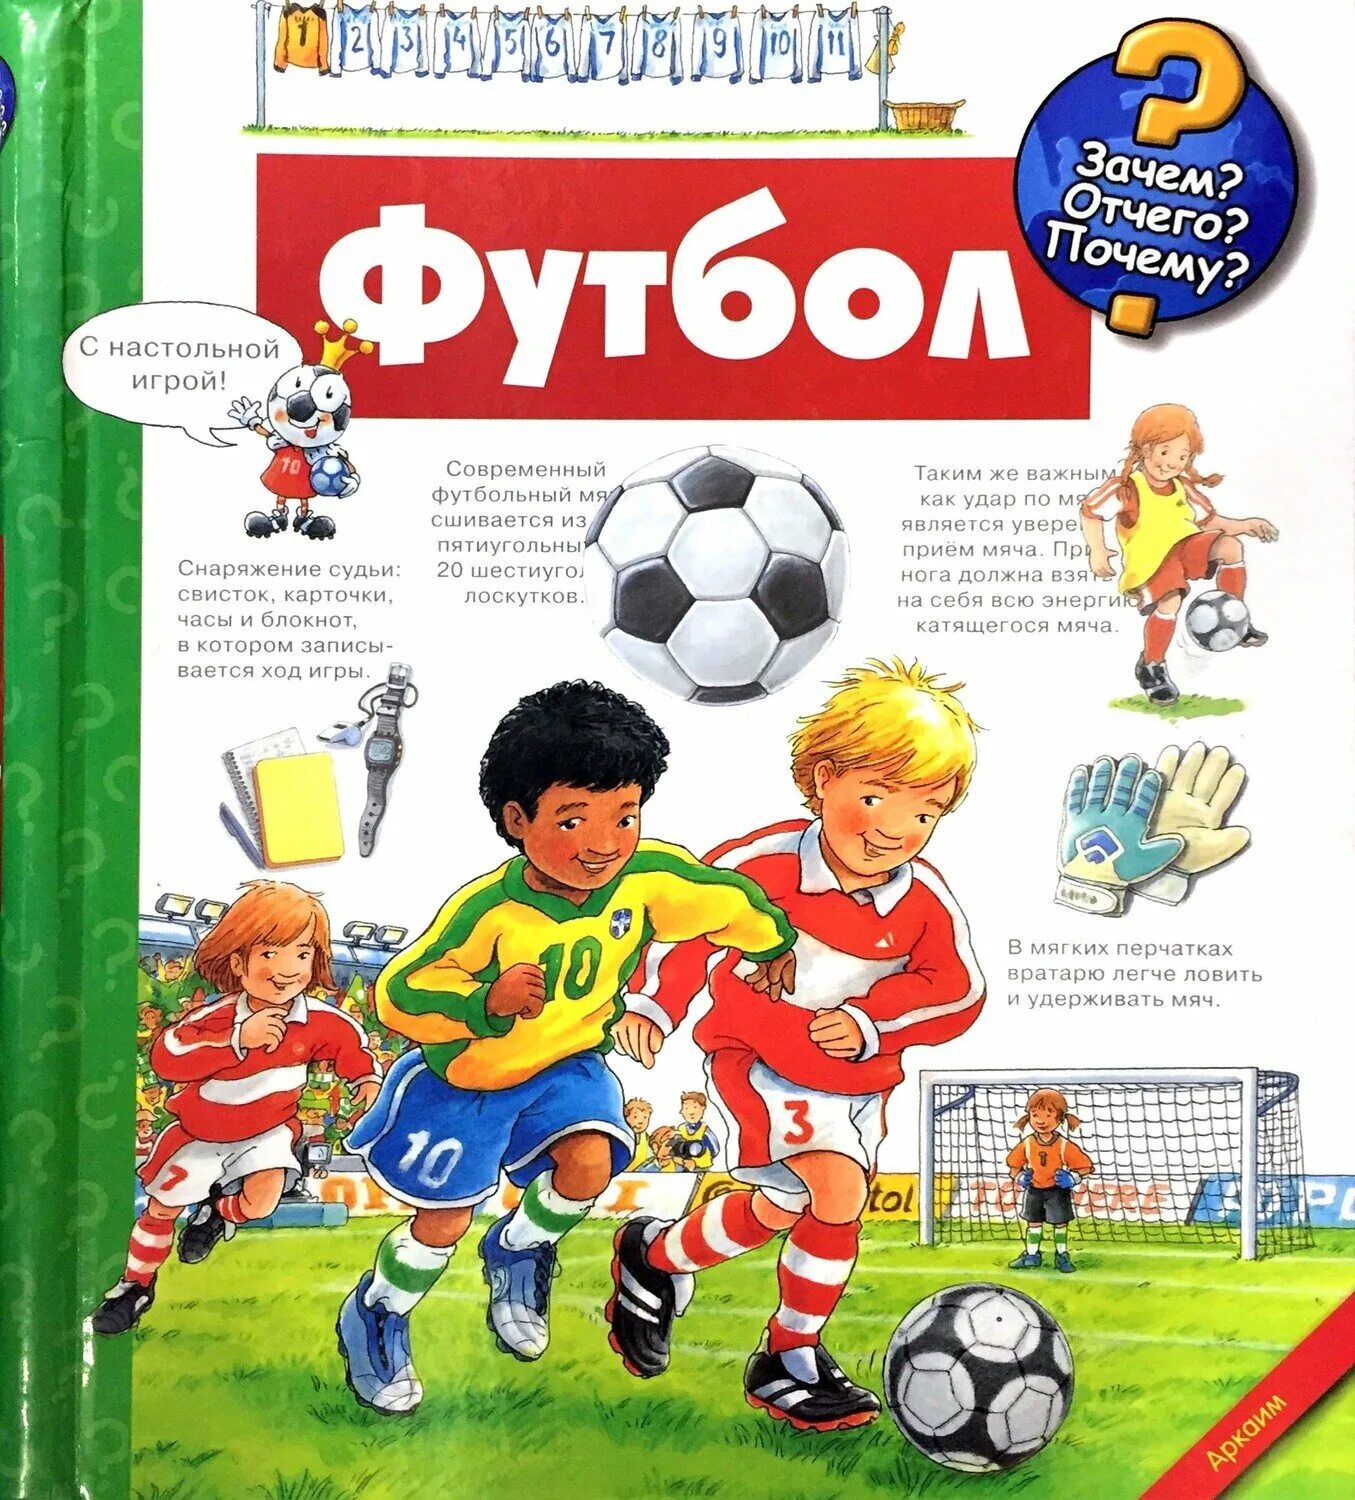 Книжка про футбол. Художественные книги про футбол для детей. Детские книги про футбол. Журнал про футбол для детей. Играйте в футбол книга